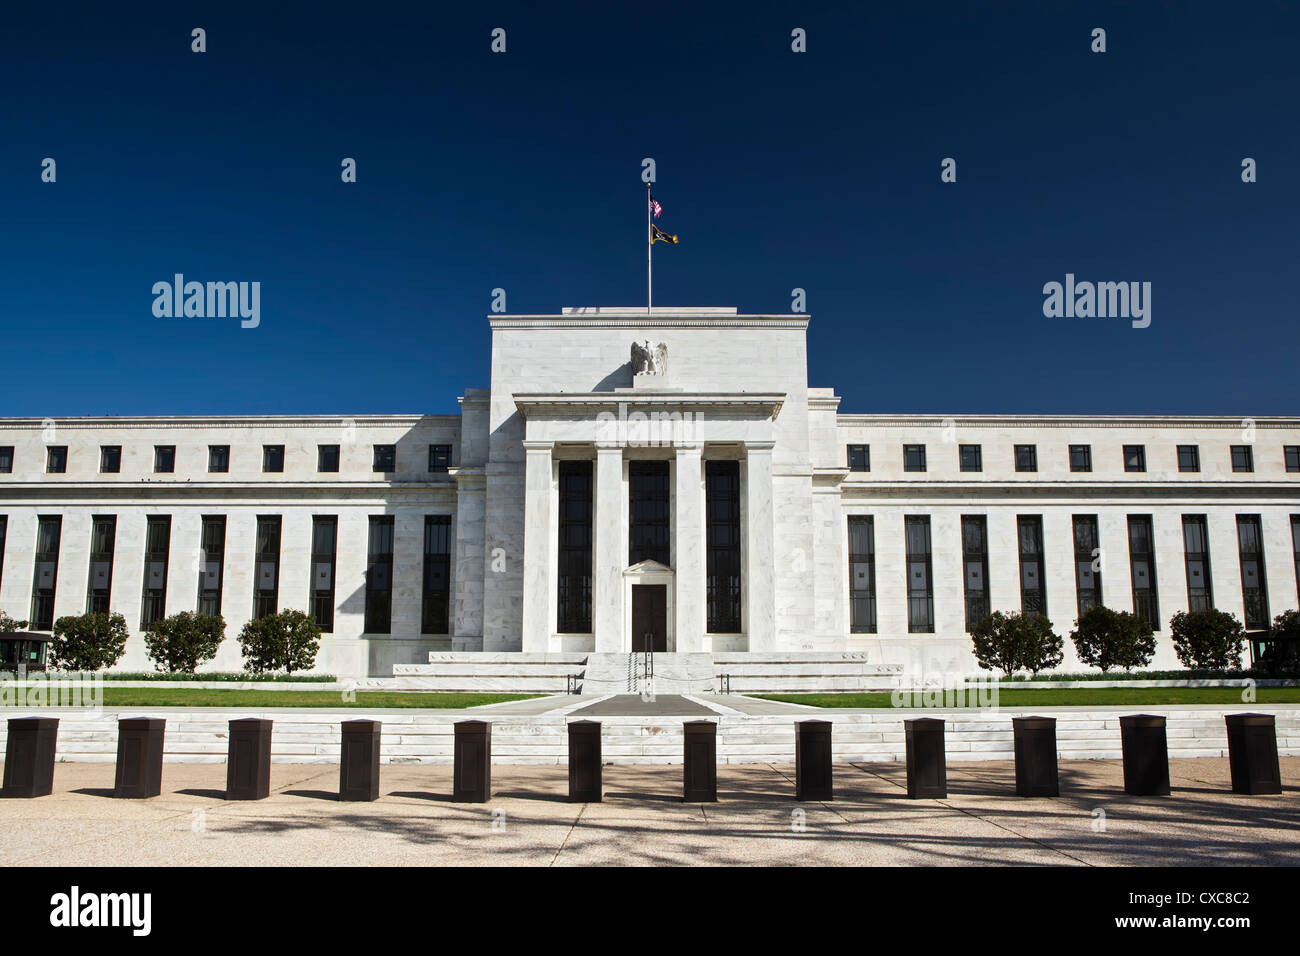 La Réserve fédérale des Etats-Unis, Washington D.C., Etats-Unis d'Amérique, Amérique du Nord Banque D'Images